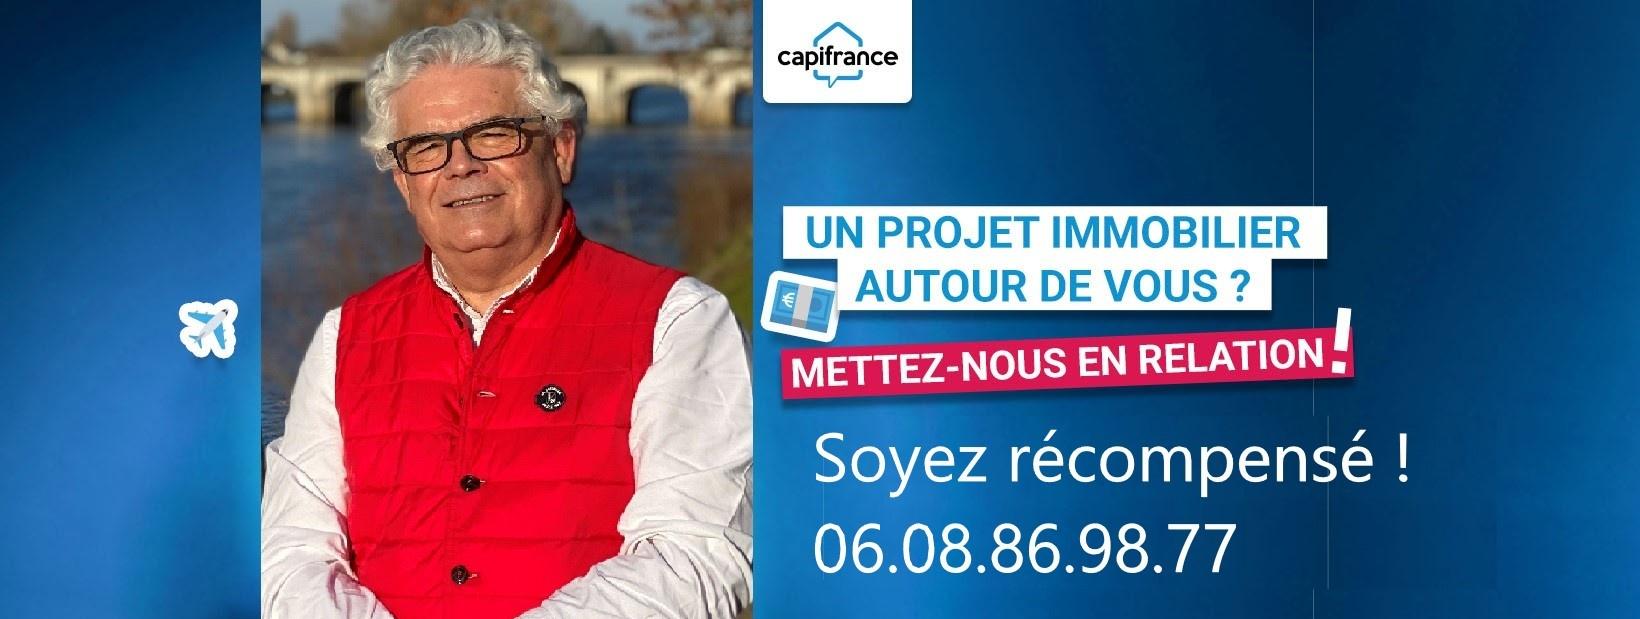 Agent Mandataire Immobilier - Capifrance Jean-pierre Gratteau Châtellerault